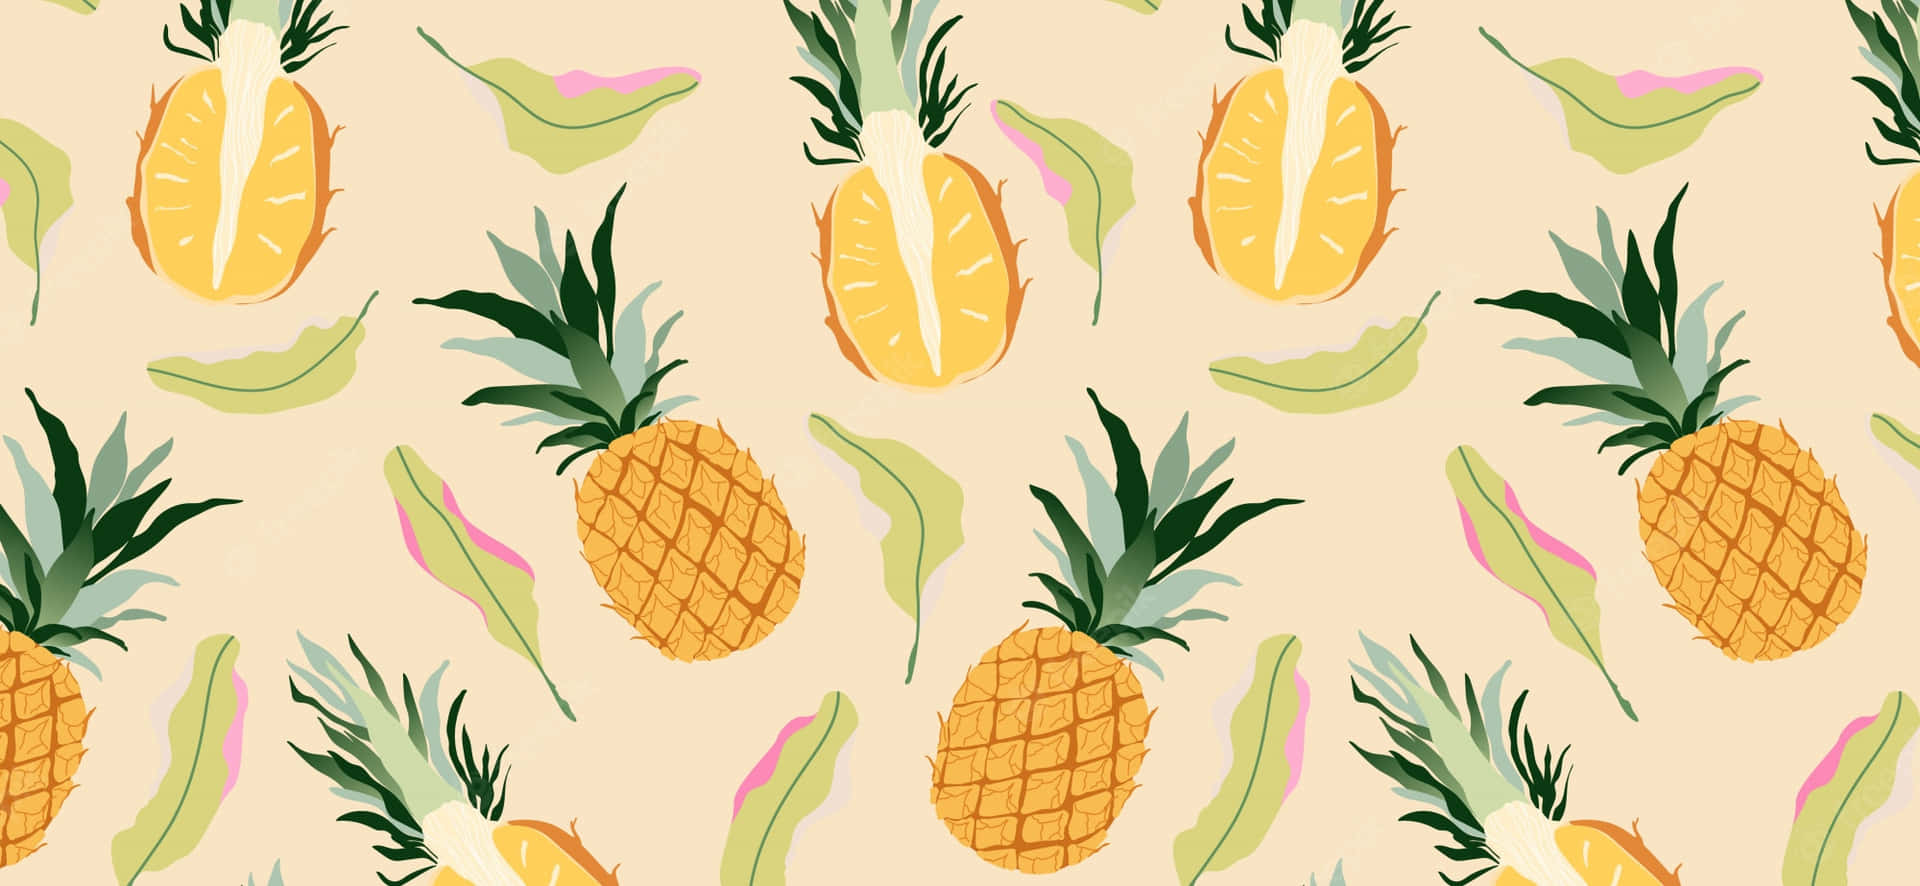 Unbox the Versatility of Pineapple Desktop Wallpaper